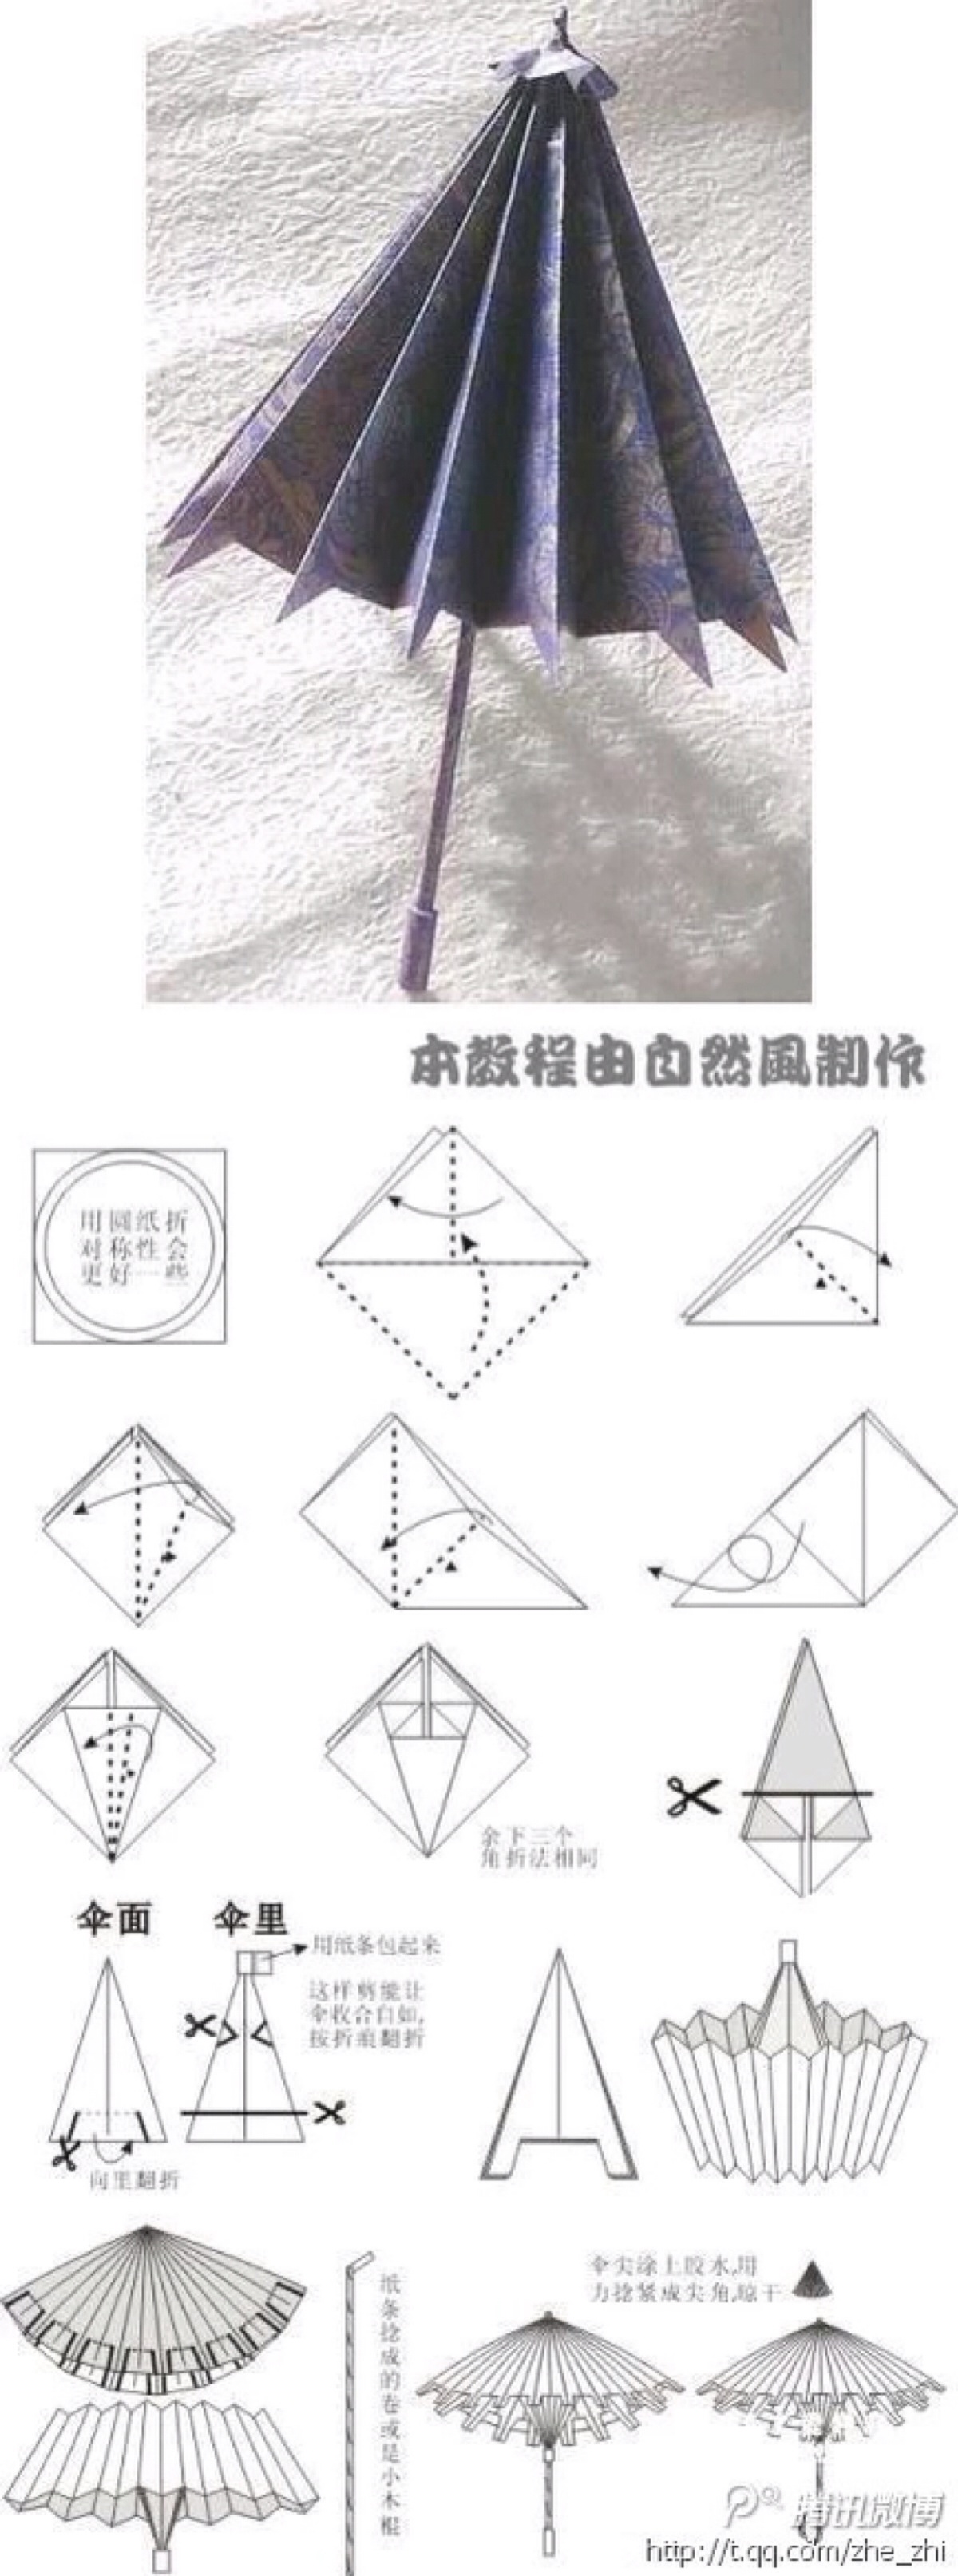 折纸教程 雨伞折纸教程